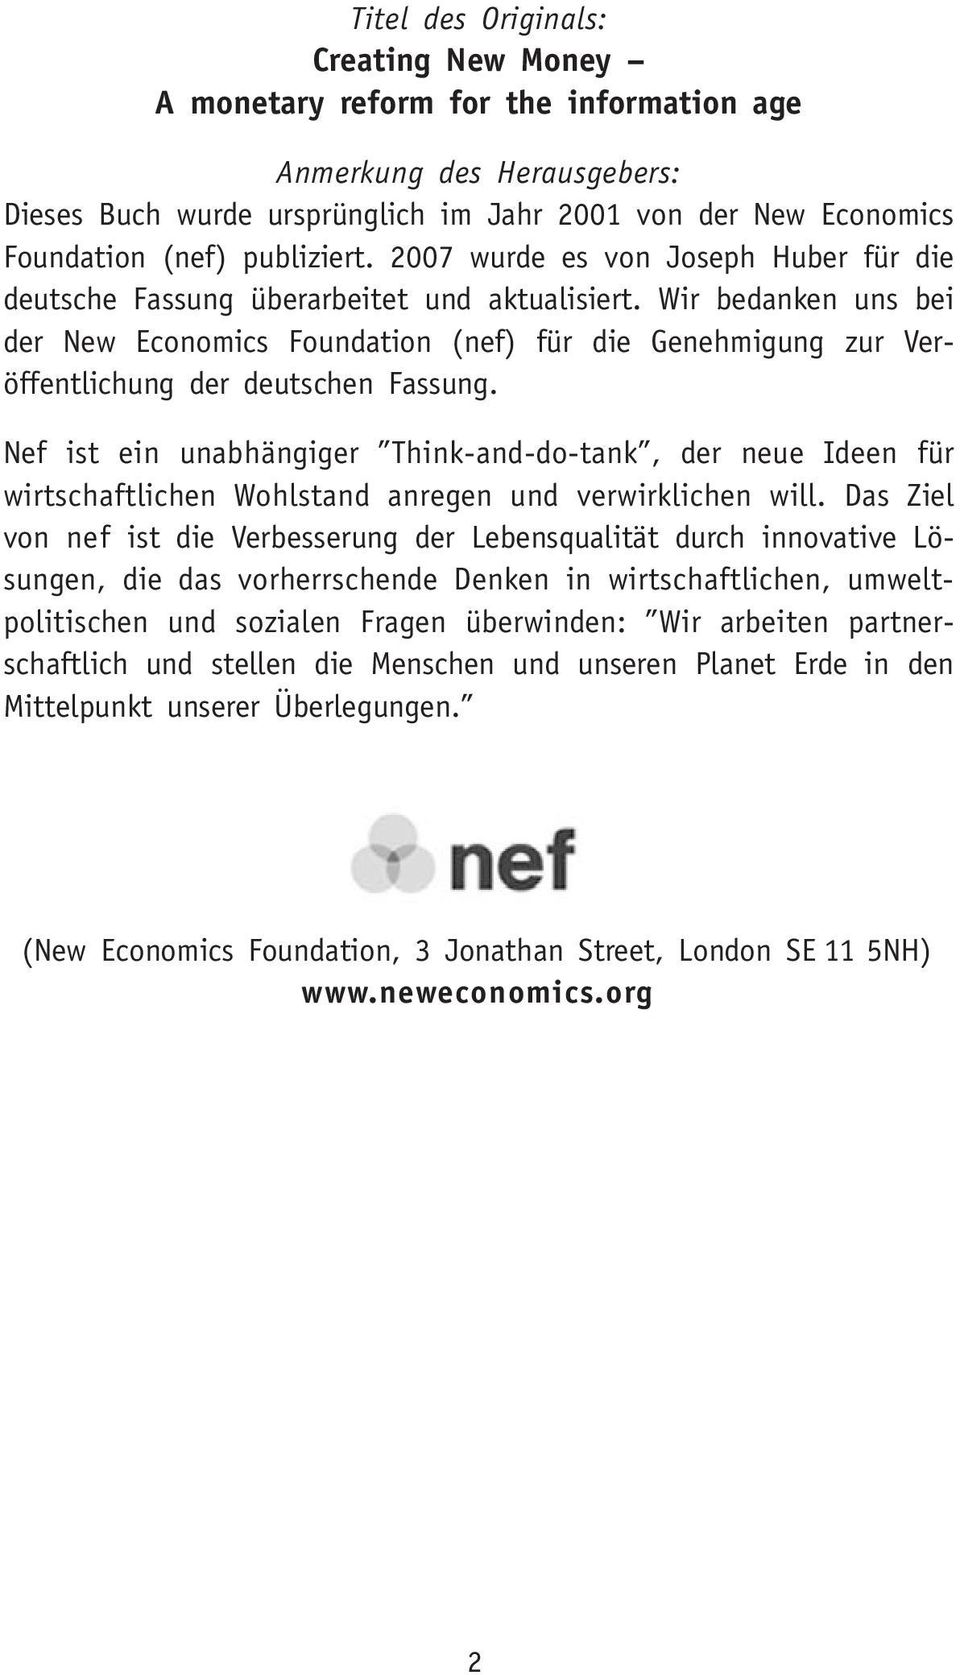 Wir bedanken uns bei der New Economics Foundation (nef) für die Genehmigung zur Veröffentlichung der deutschen Fassung.